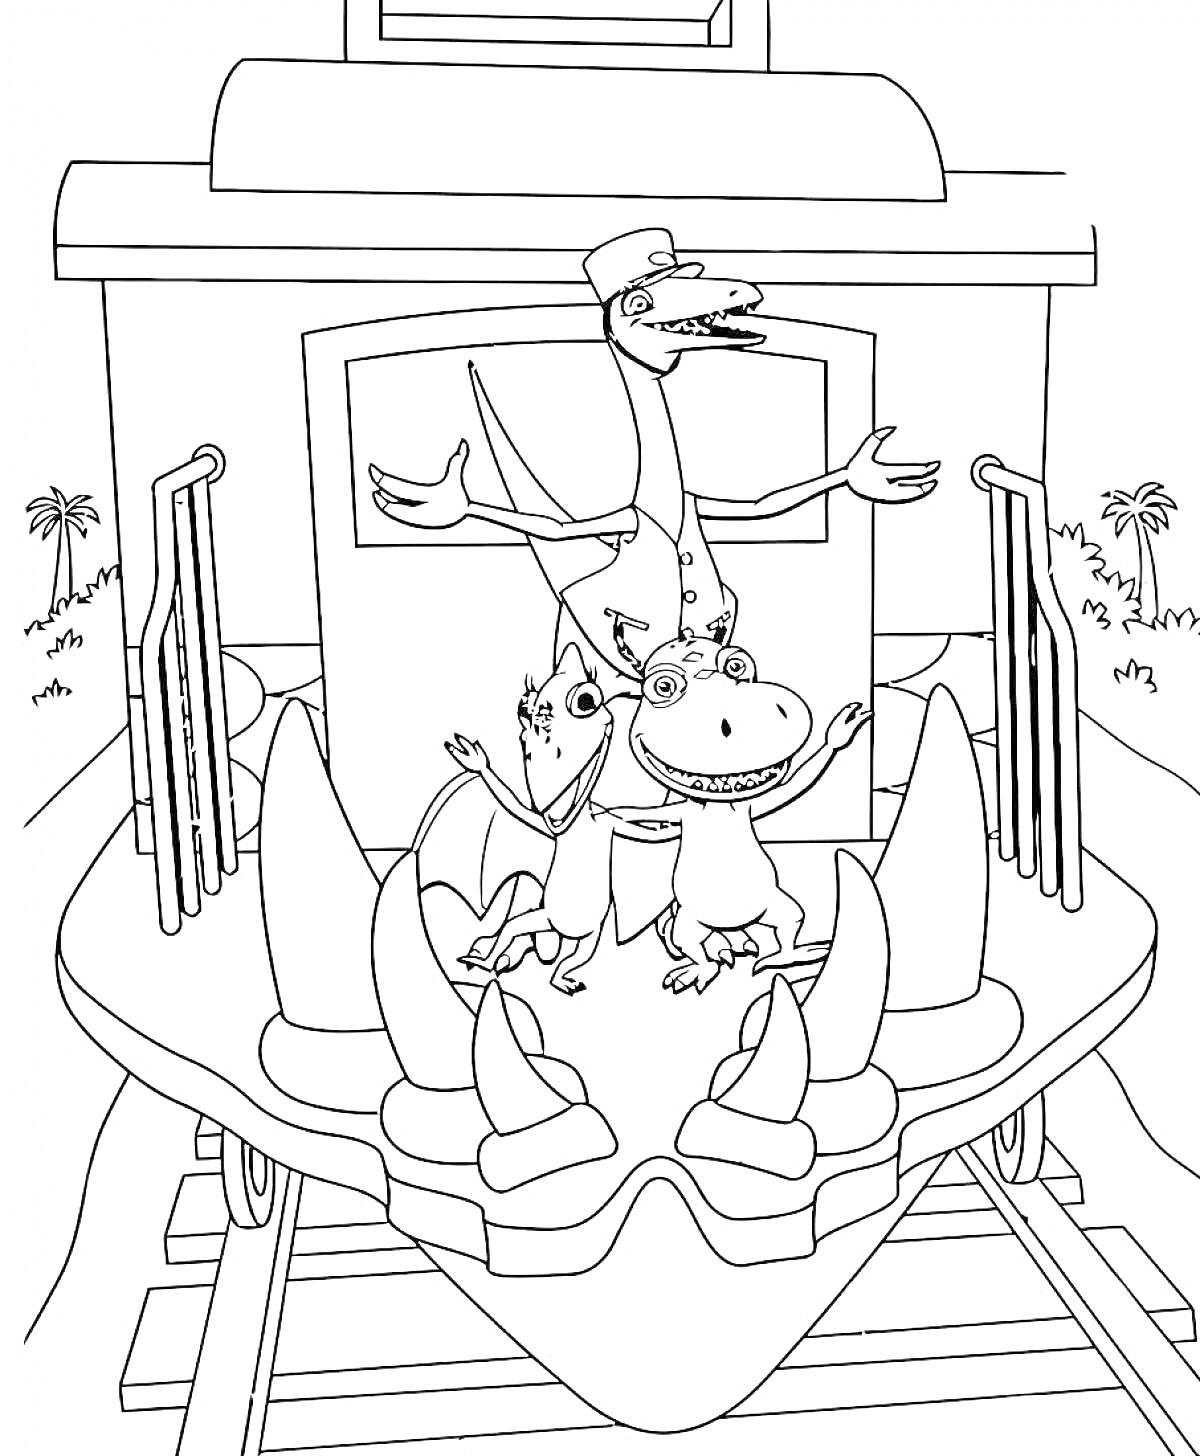 Раскраска Динозавры на переднем вагоне поезда динозавров, включая кондуктора-птерозавра и его помощников, фон с пальмами